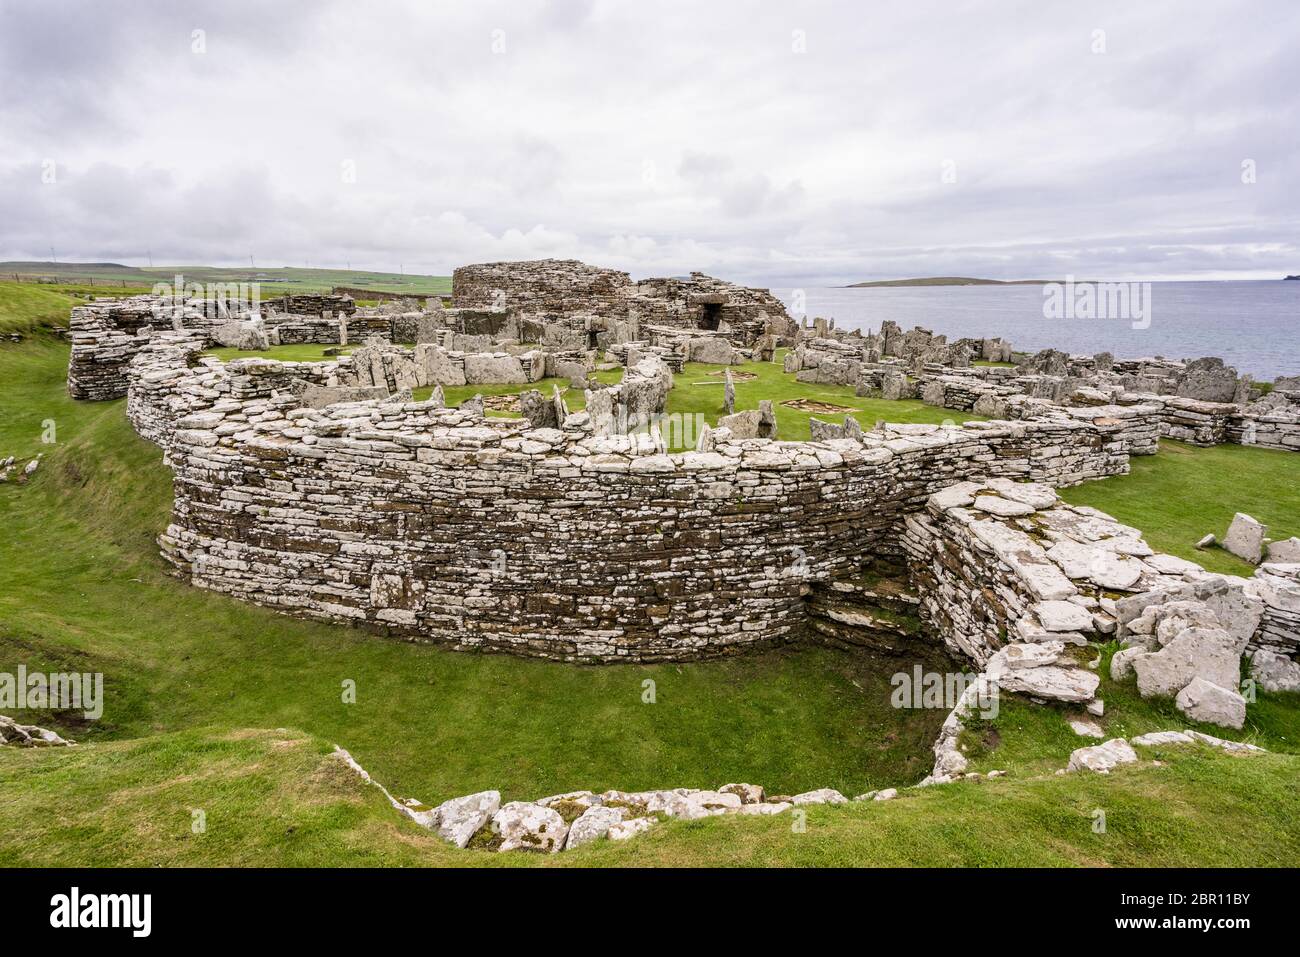 Architecture en pierre préhistorique celtique avec vue sur l'océan atlantique à Broch of Gurness dans la baie d'Aikerness, aux îles Orcades, en Écosse Banque D'Images